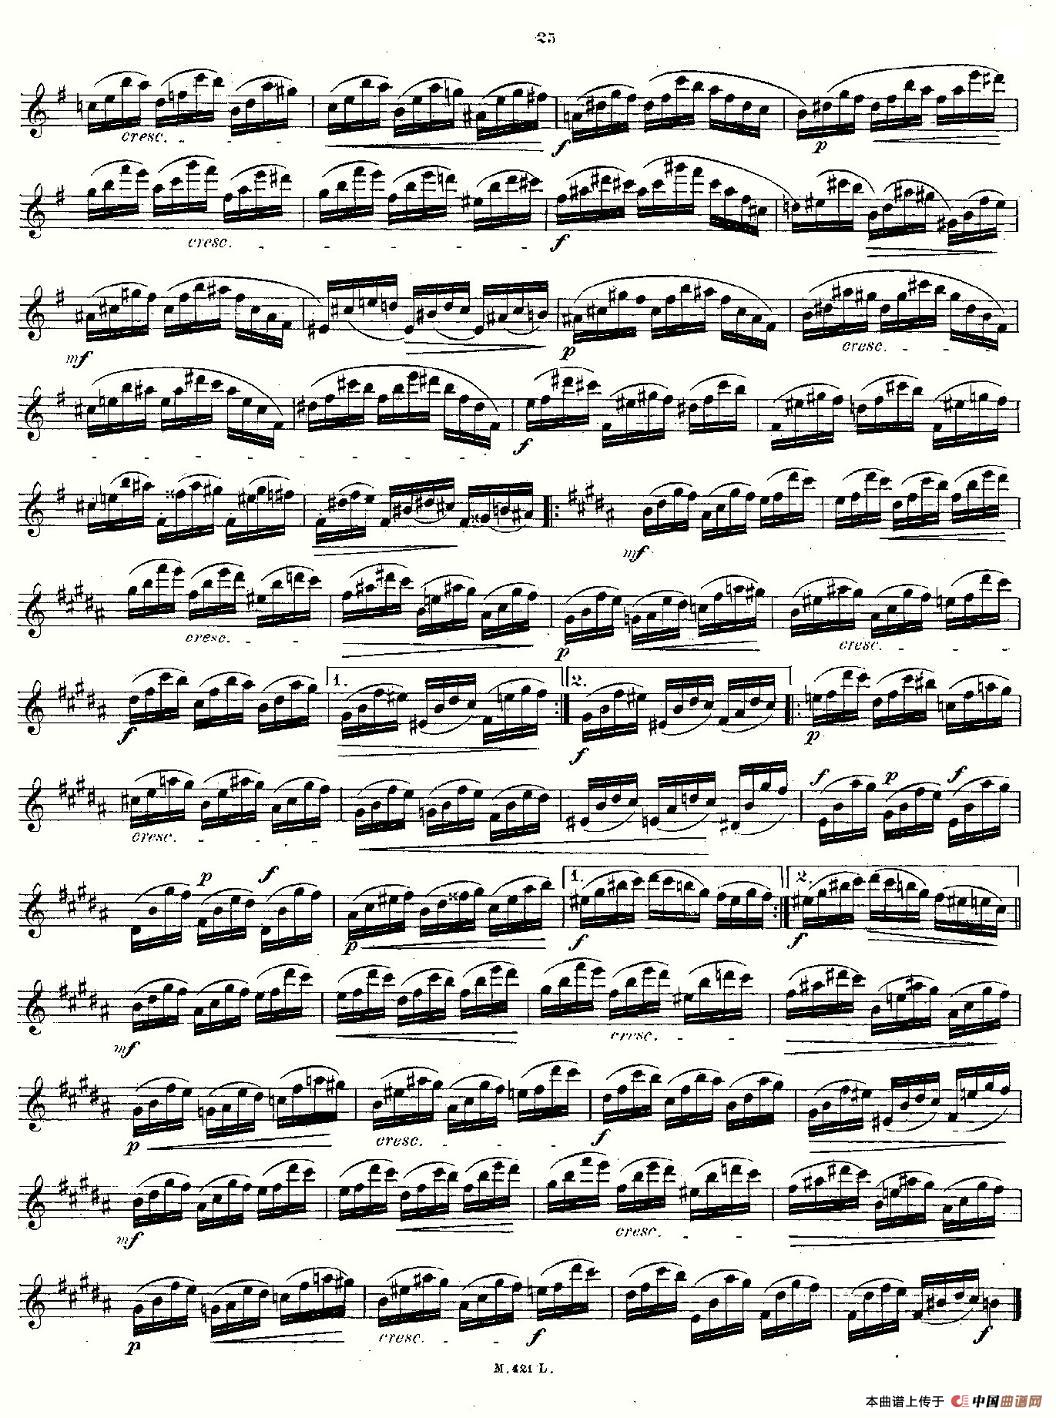 24首长笛练习曲 Op.15 之11—15